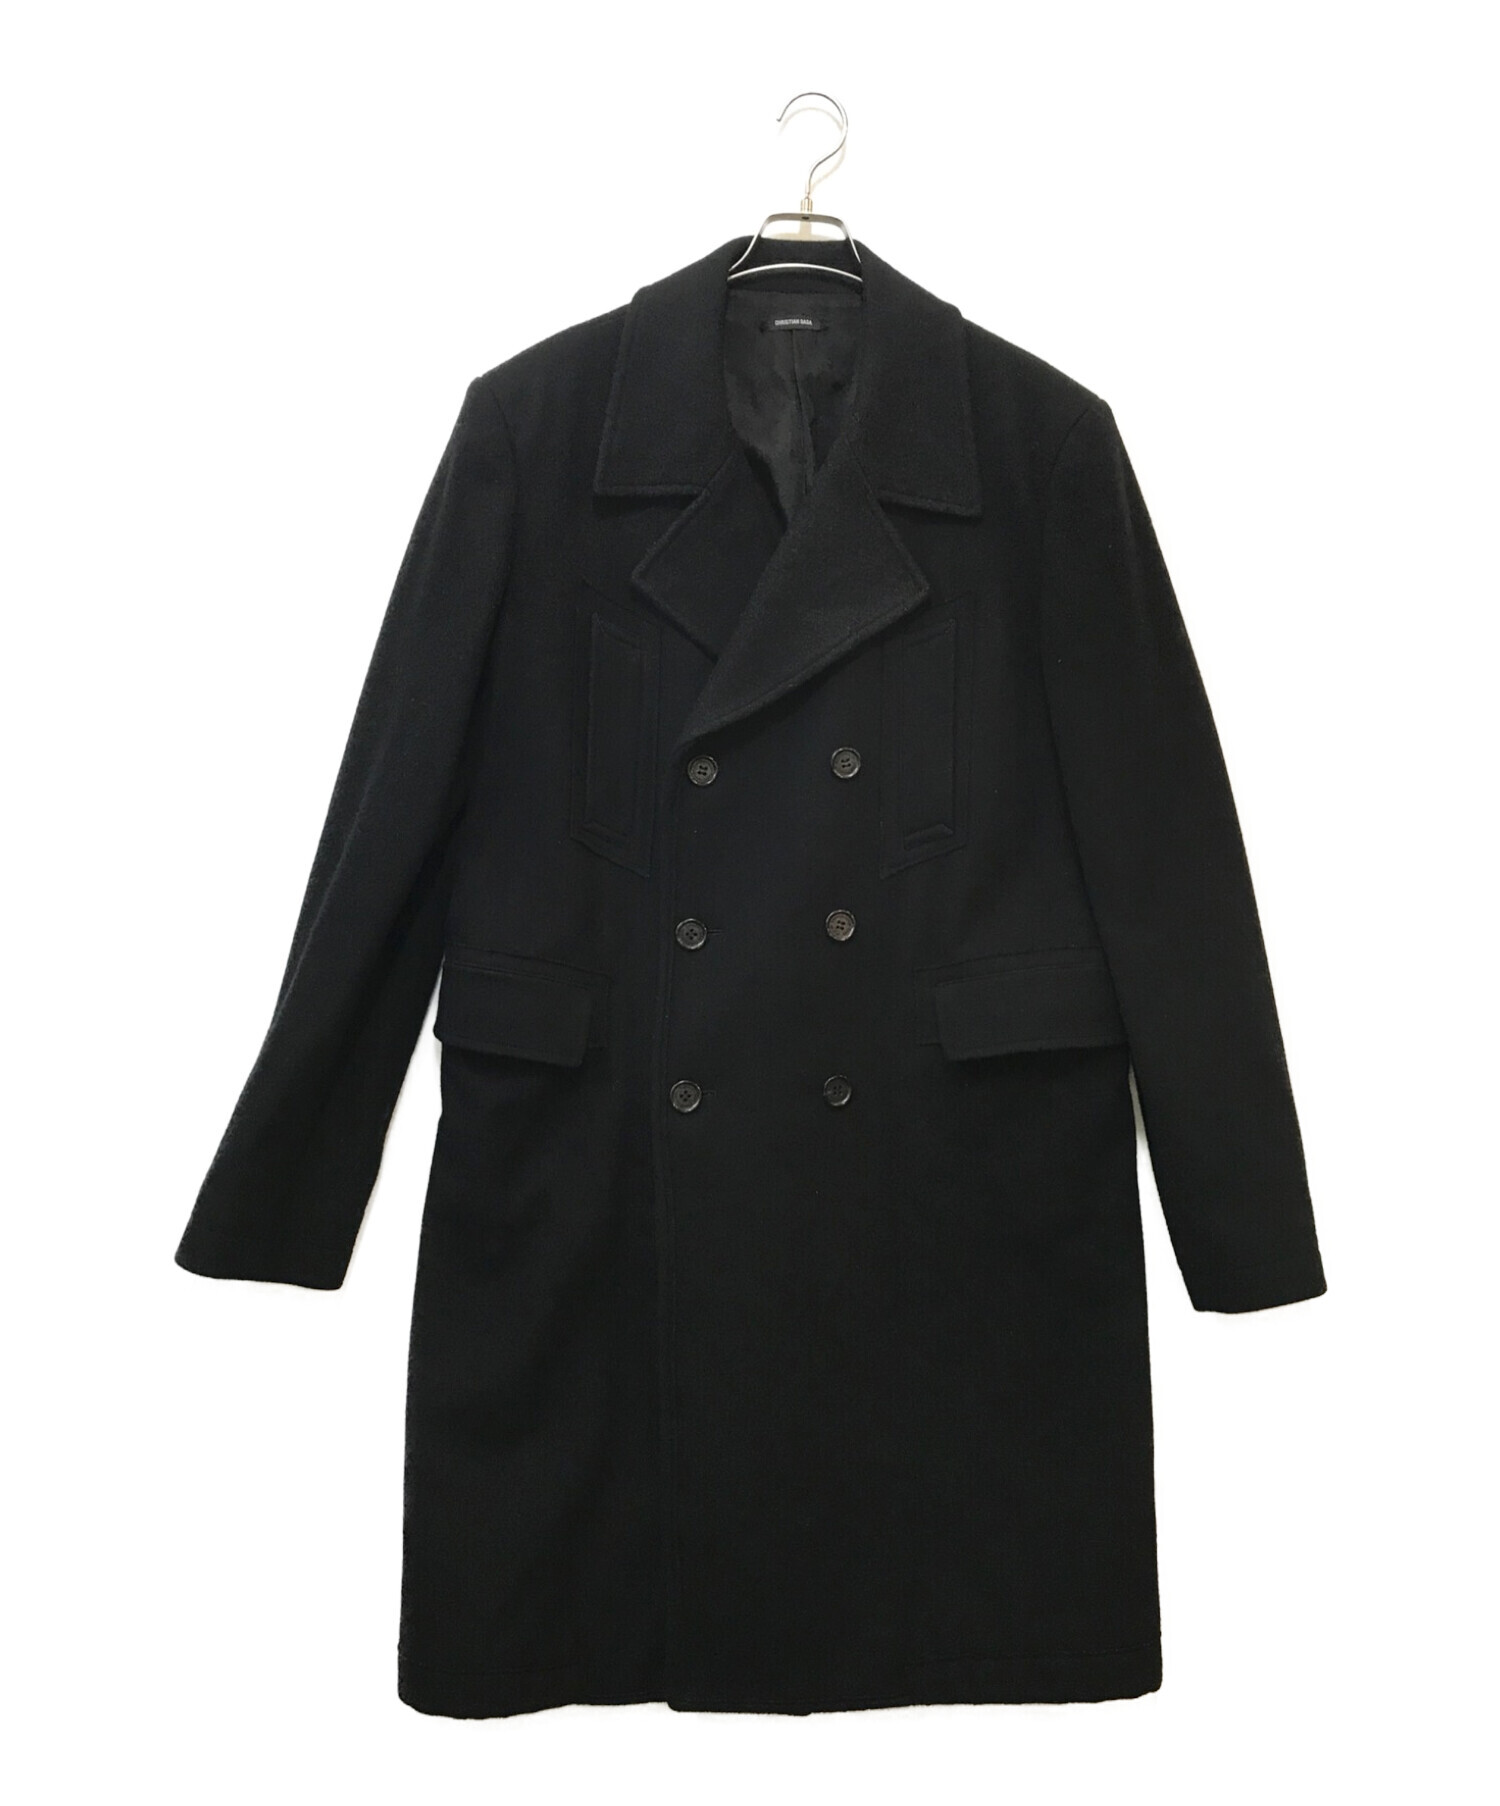 CHRISTIAN DADA (クリスチャンダダ) Meltondoublecoat ブラック サイズ:48